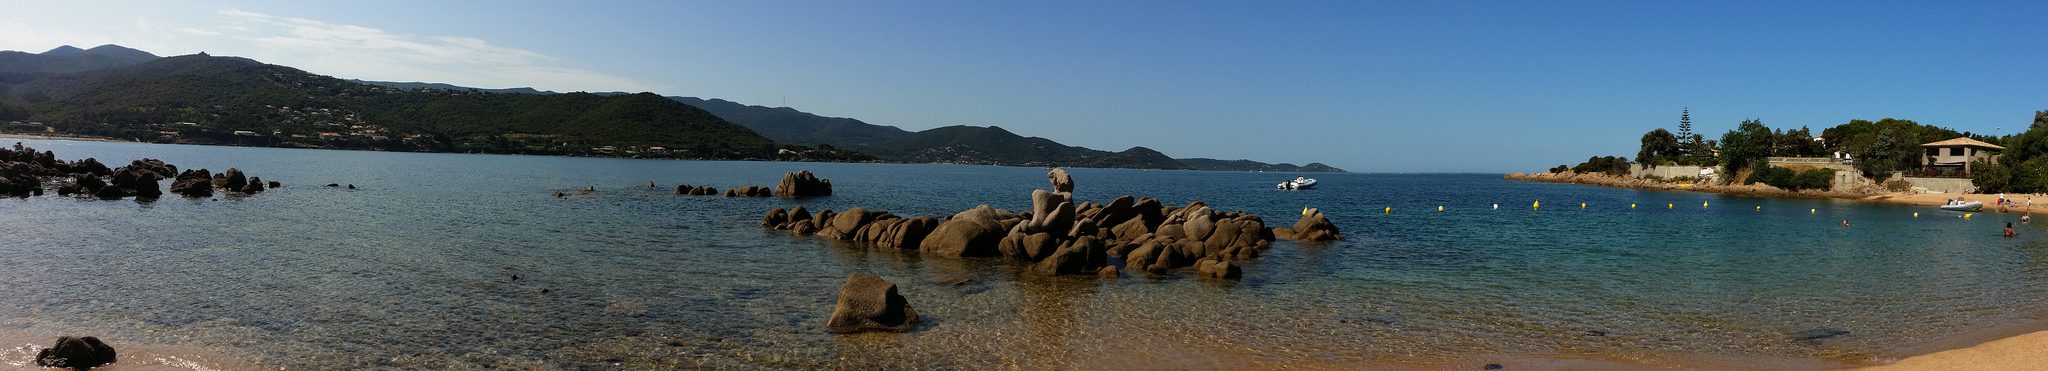 Le belle spiagge della Corsica: Ruppione